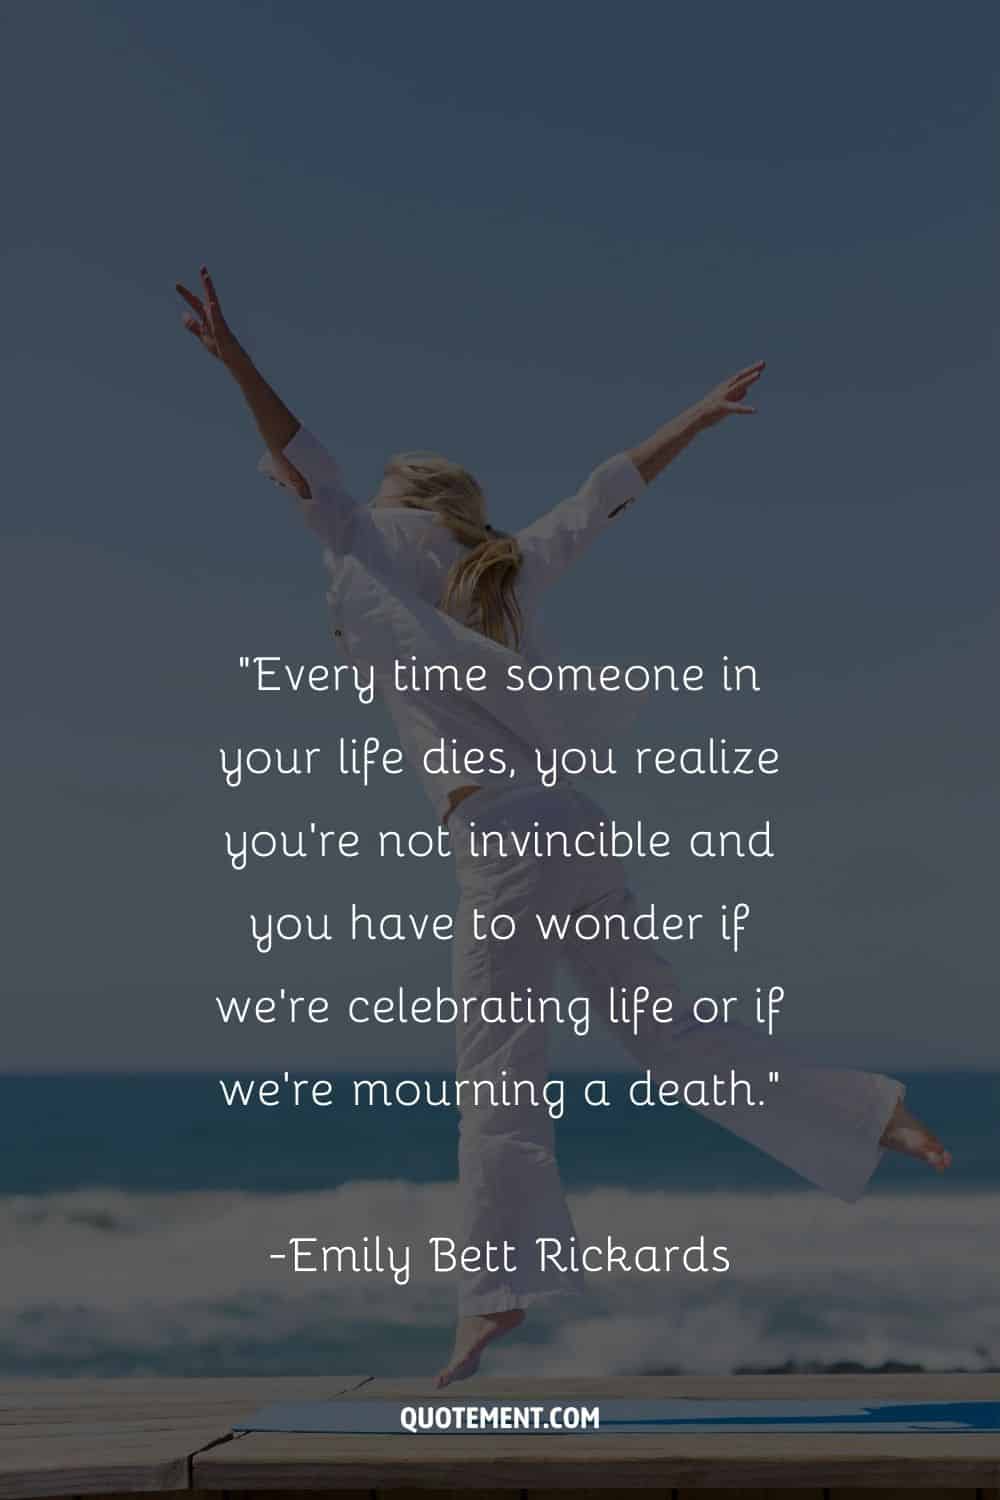 una mujer vestida de blanco saltando en la playa representando la mejor cita sobre celebrar la vida